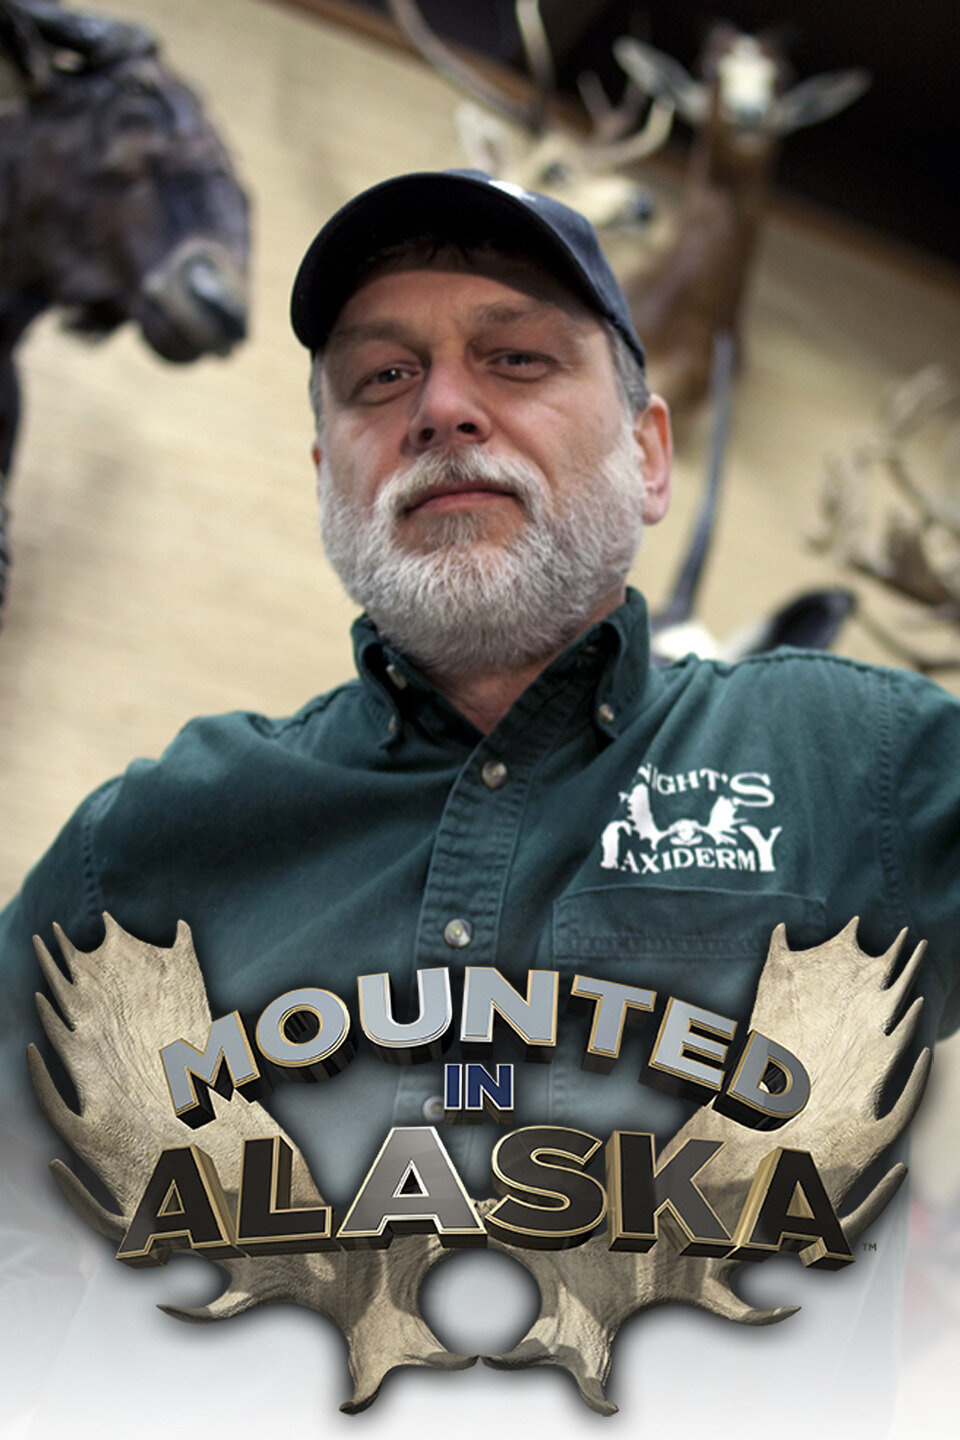 Mounted in Alaska ne zaman